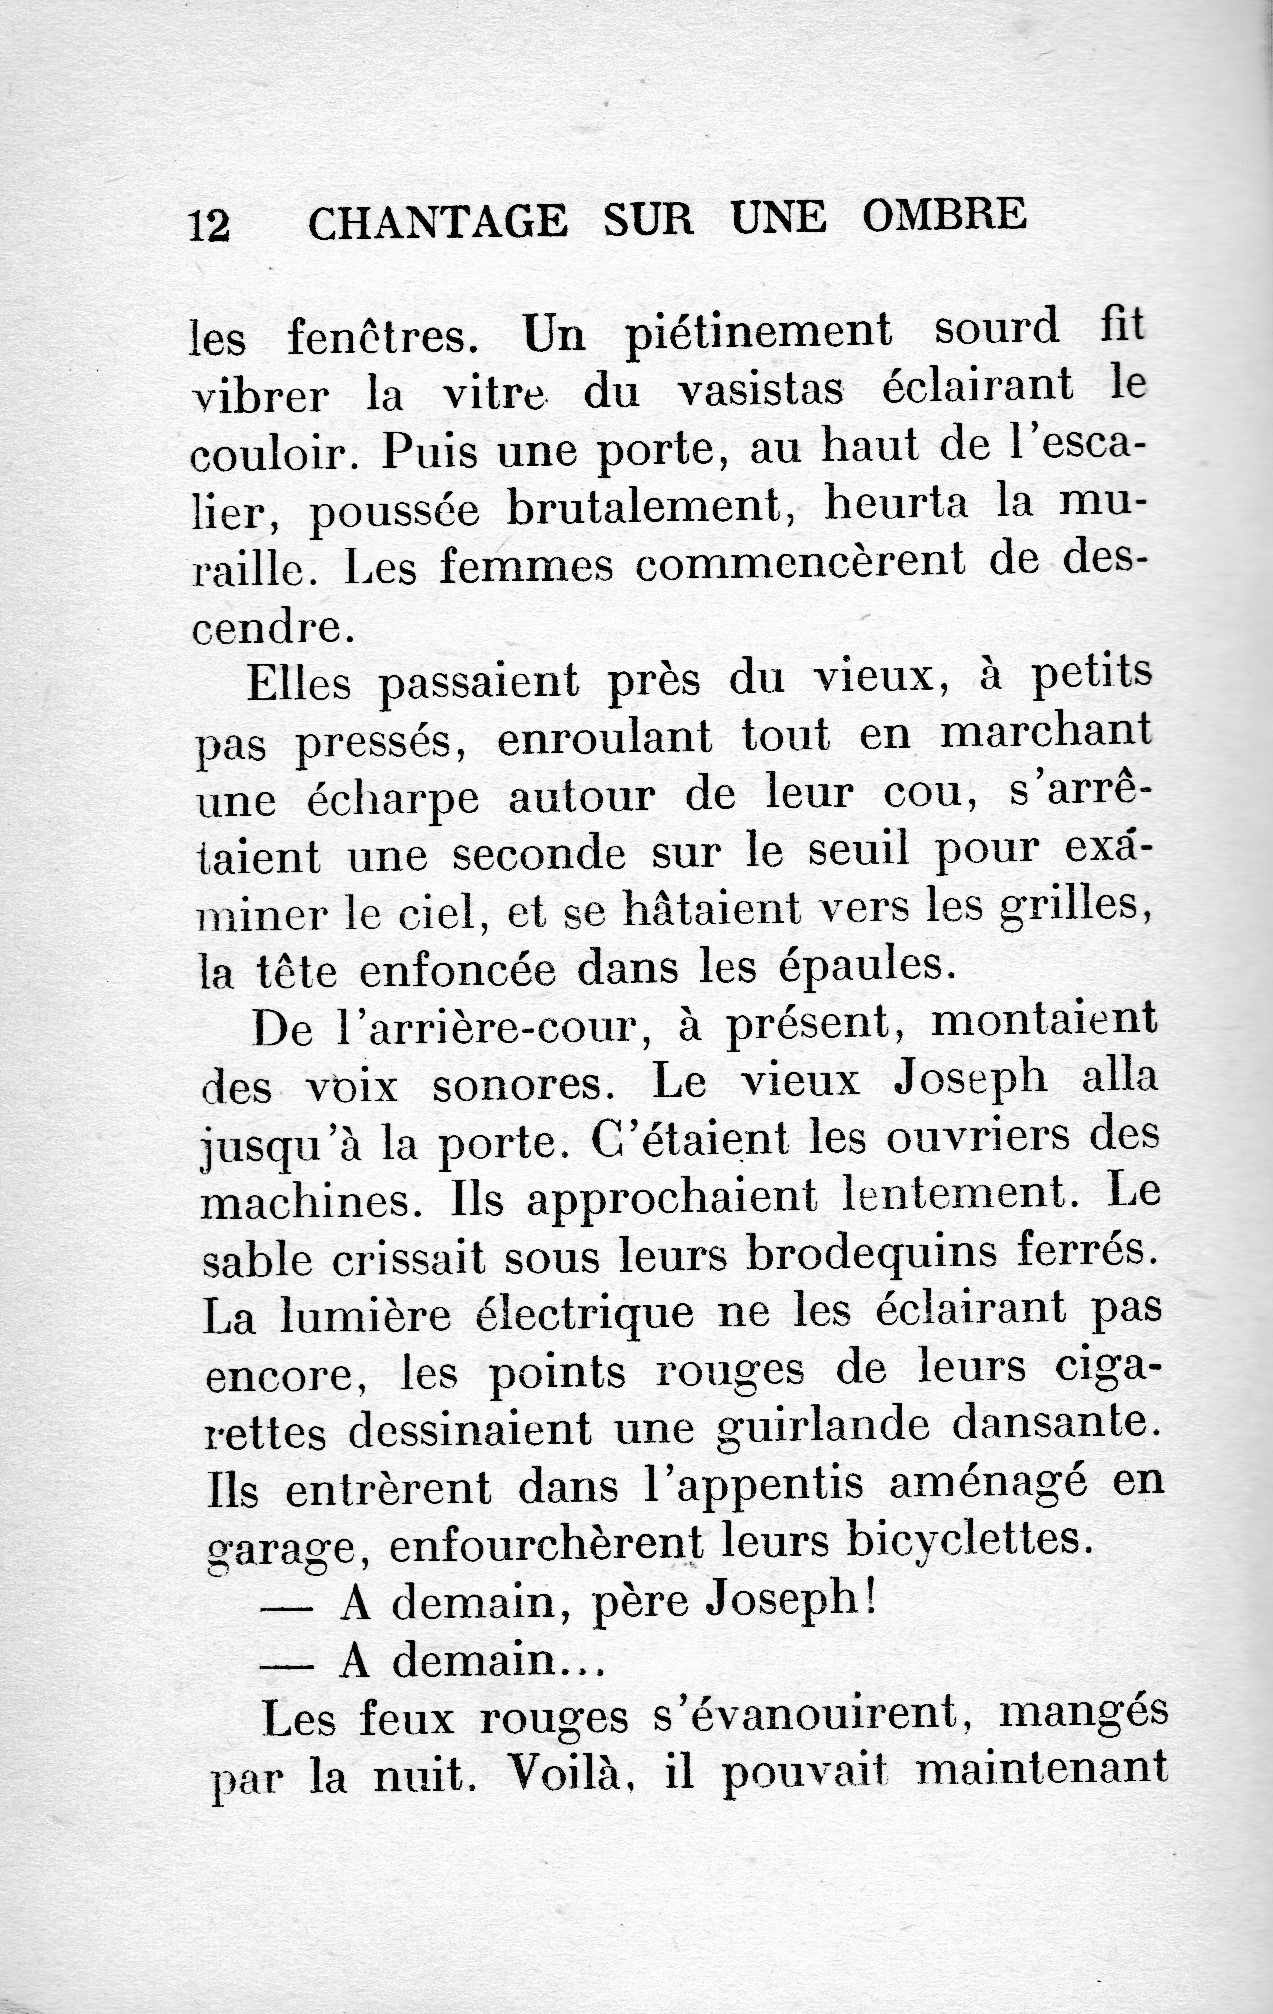 Chantage-sur-une-ombre, Le Masque (1963) - 1er chapitre offert - 6